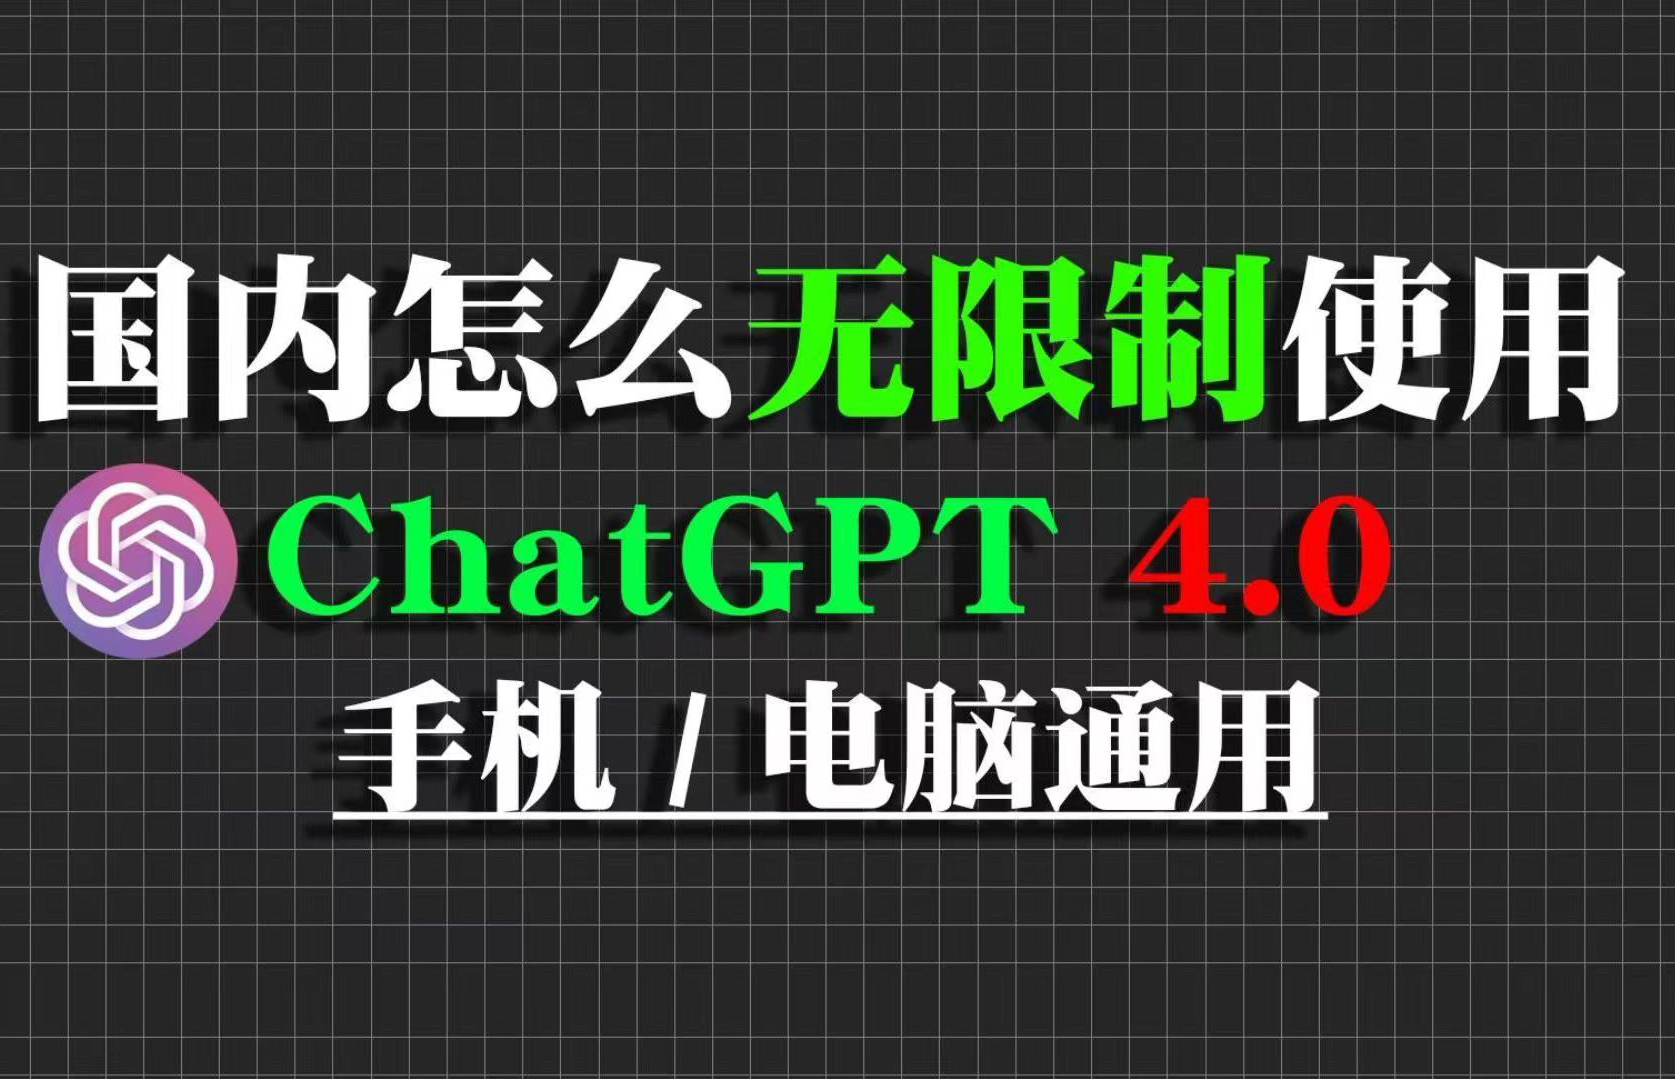 分享国内可免费无限制使用的ChatGPT4.0网站，无限制次数免费使用。